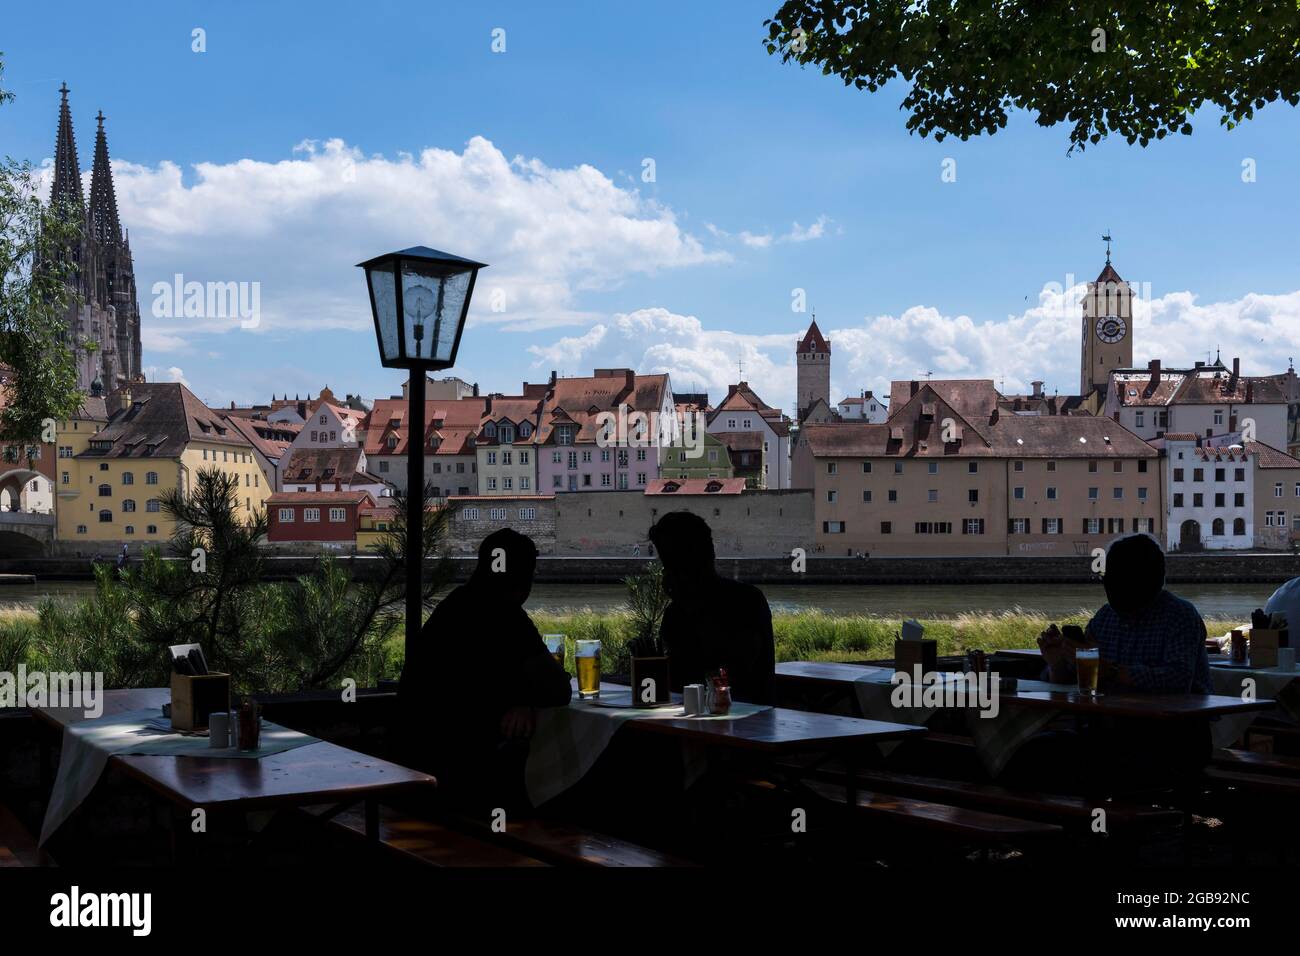 Vista sulla città con la Cattedrale di San Pietro, di fronte alla birreria all'aperto con gli ospiti come silhouette, Ratisbona, Palatinato superiore, Baviera, Germania Foto Stock